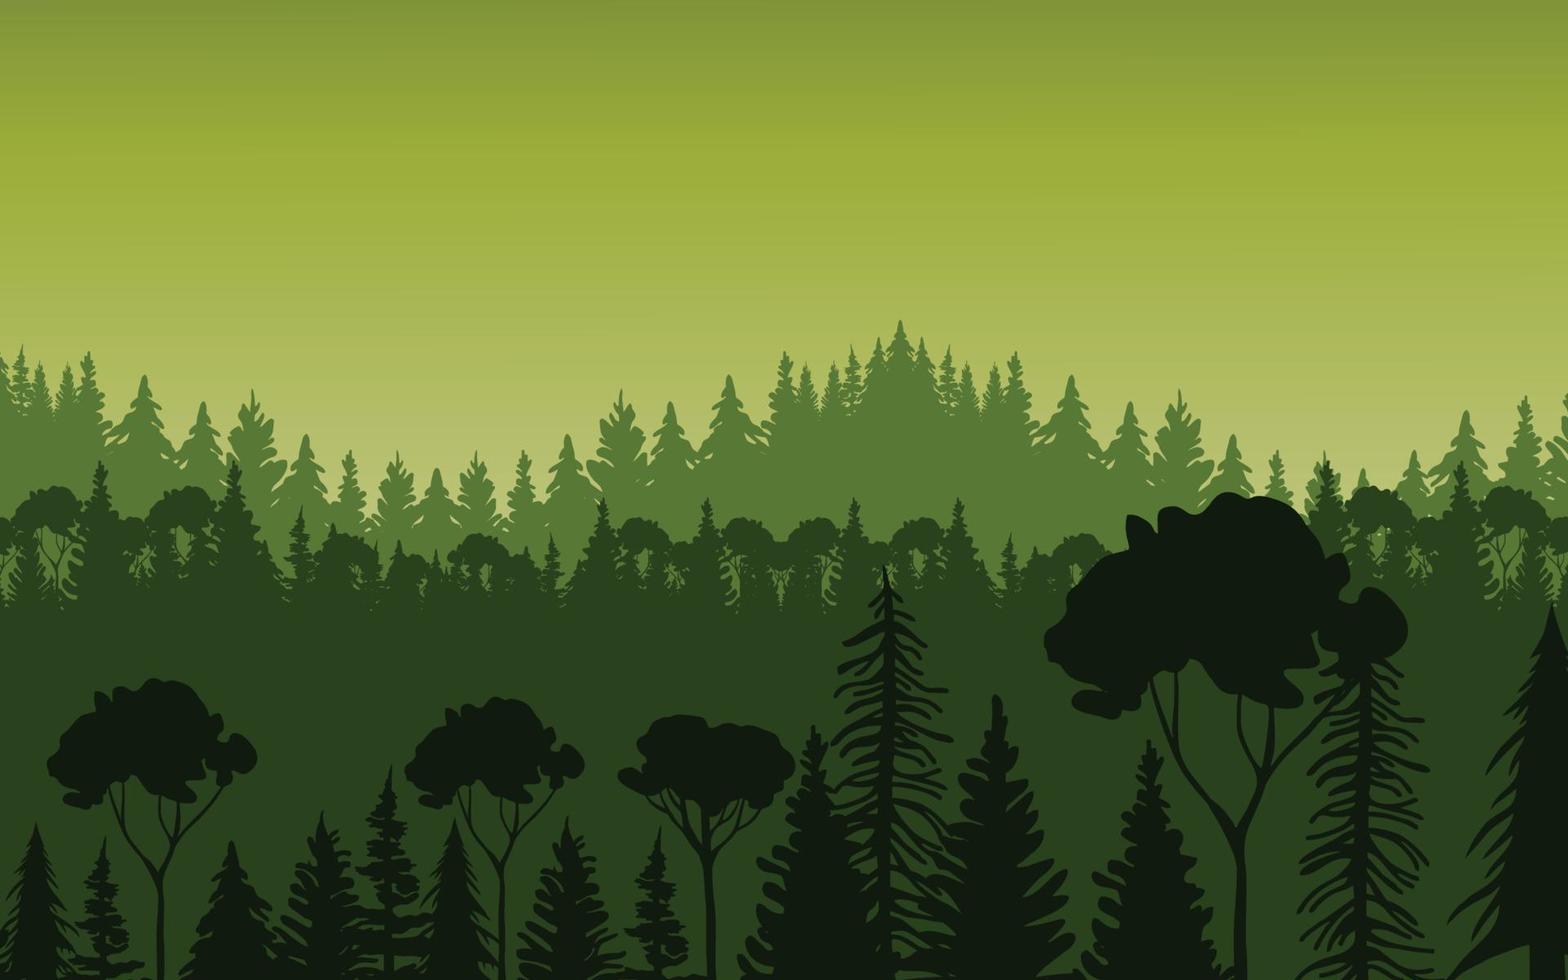 illustration av skogslandskap vektor